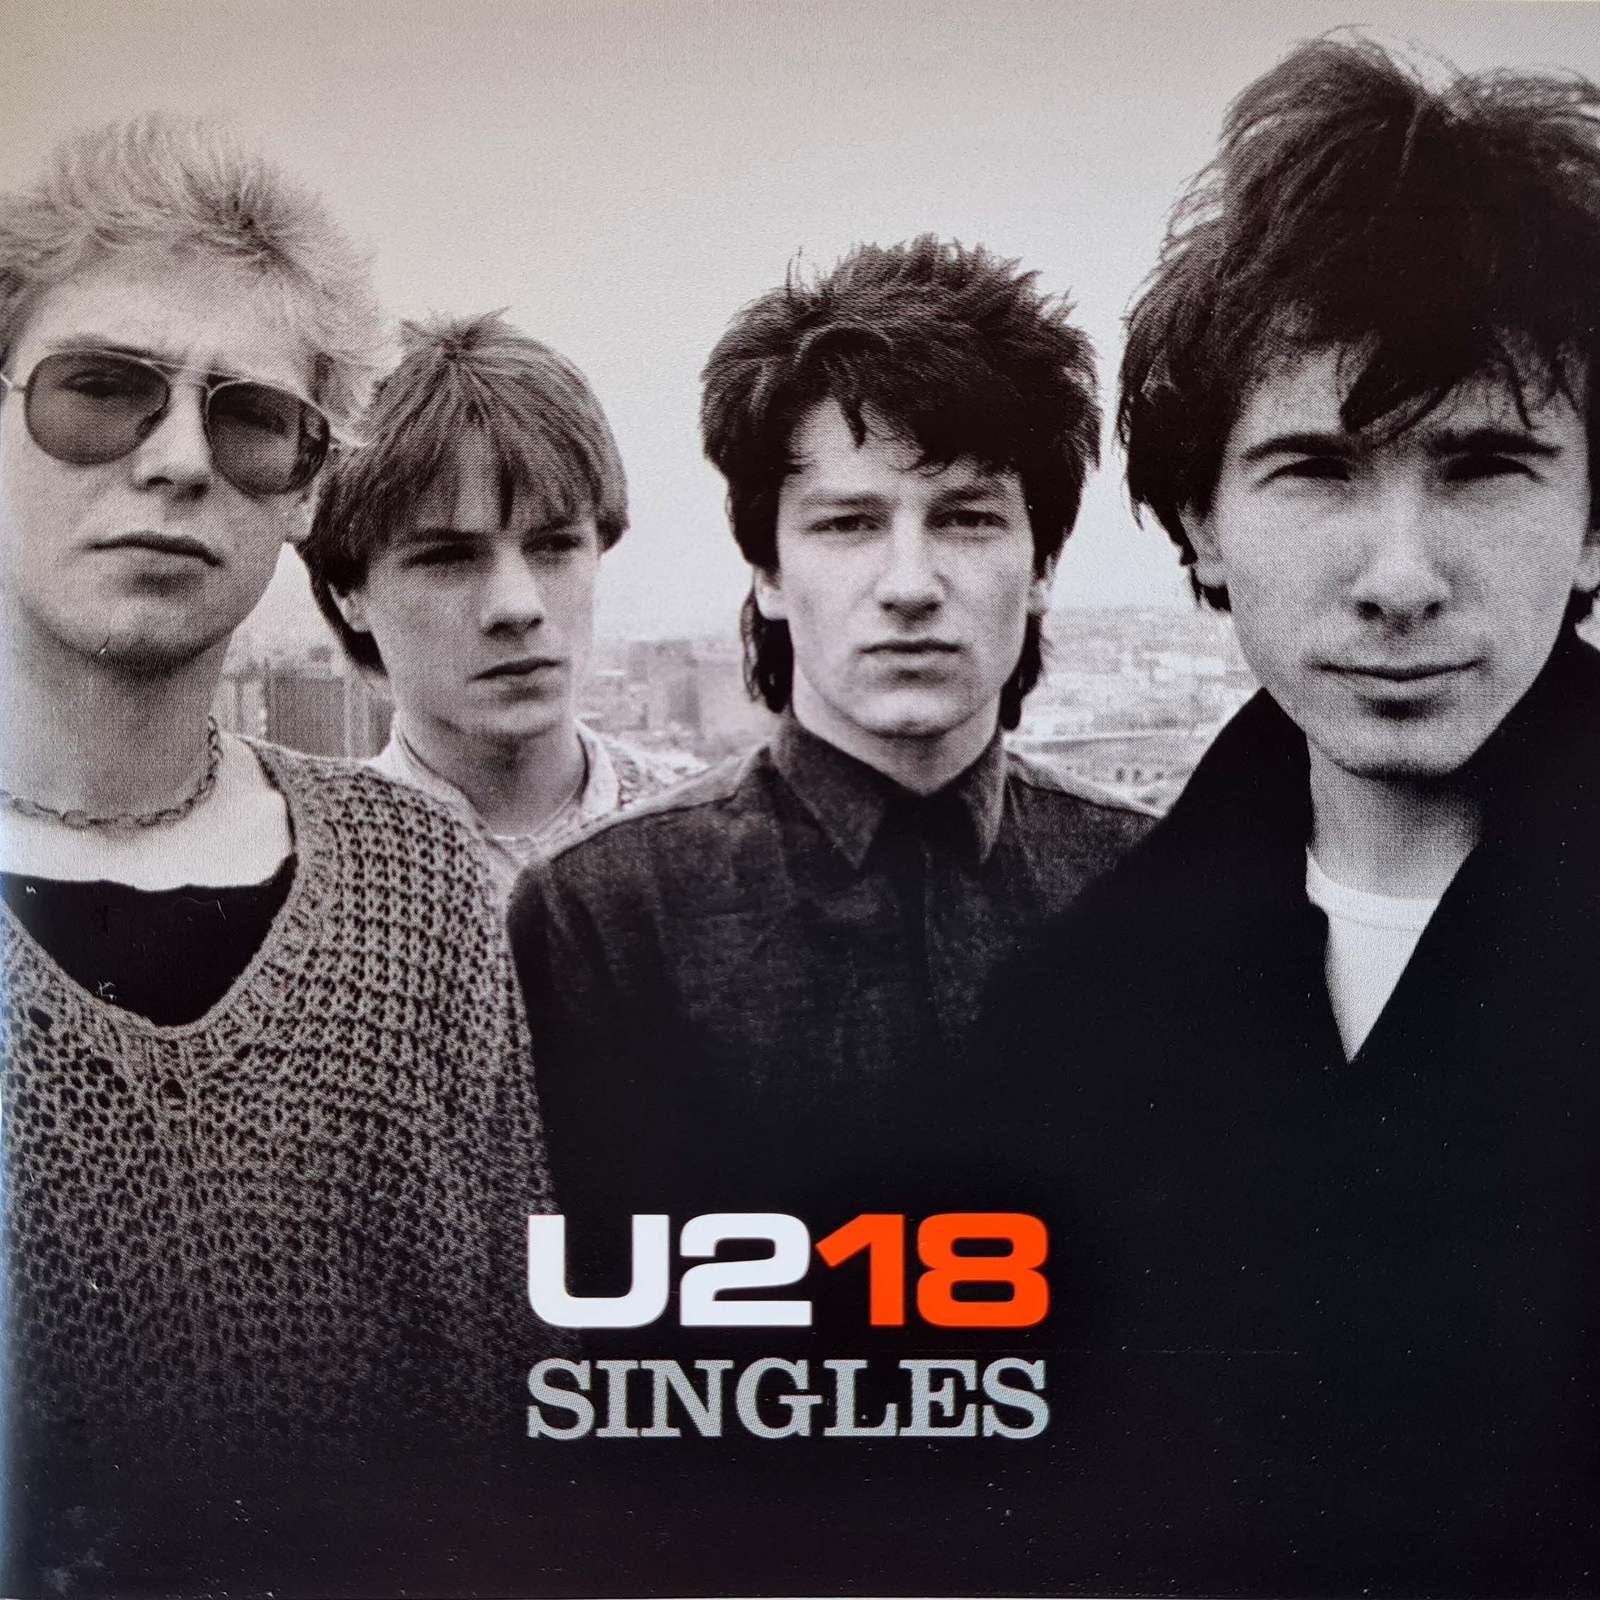 U2 - U218 Singles (CD)